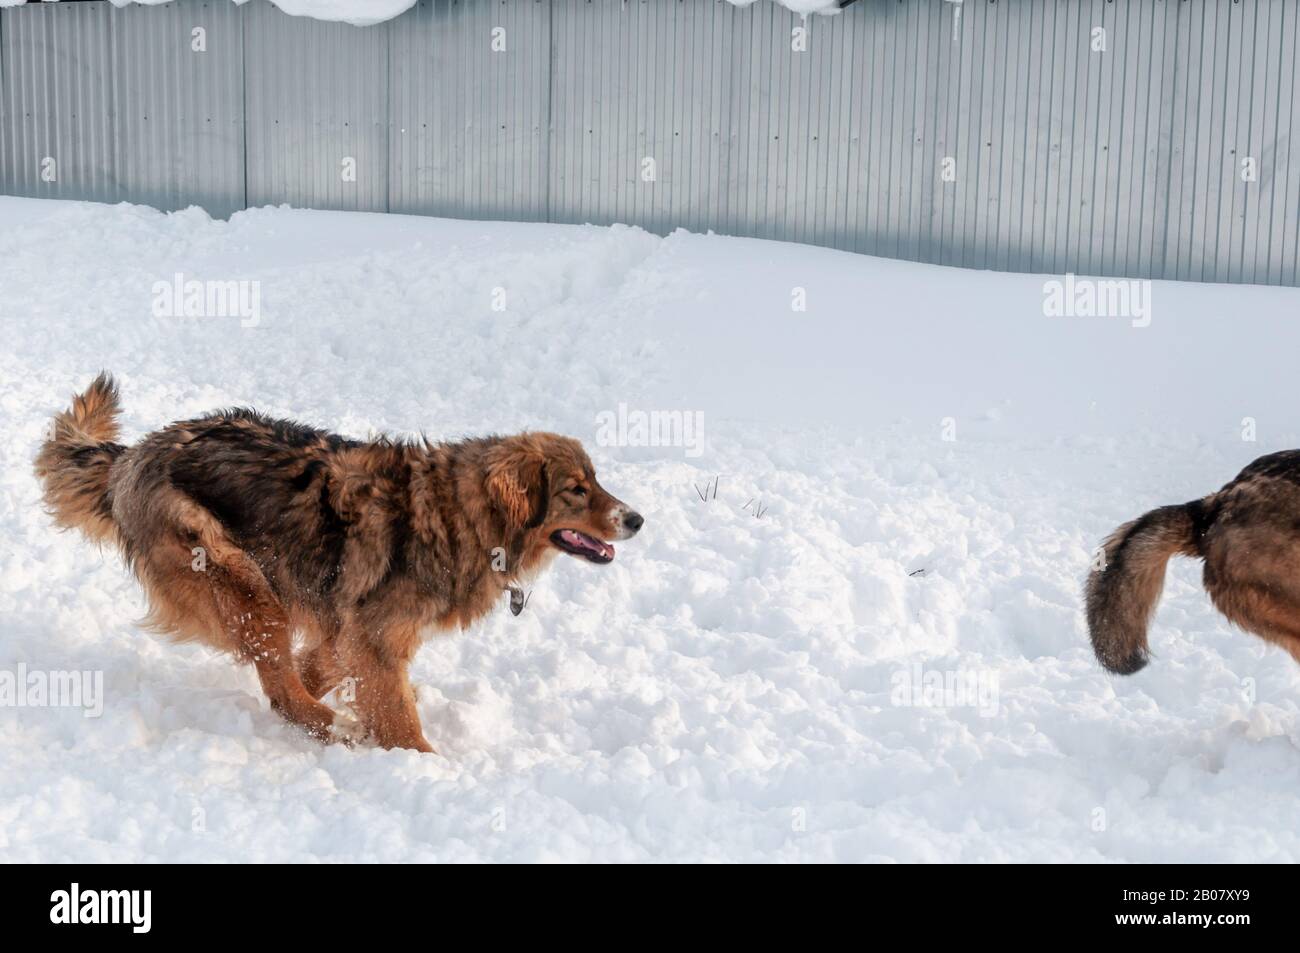 Ein schöner rothaariger großer Hund jagt den Schwanz eines anderen auf einer Schneeplattform Stockfoto